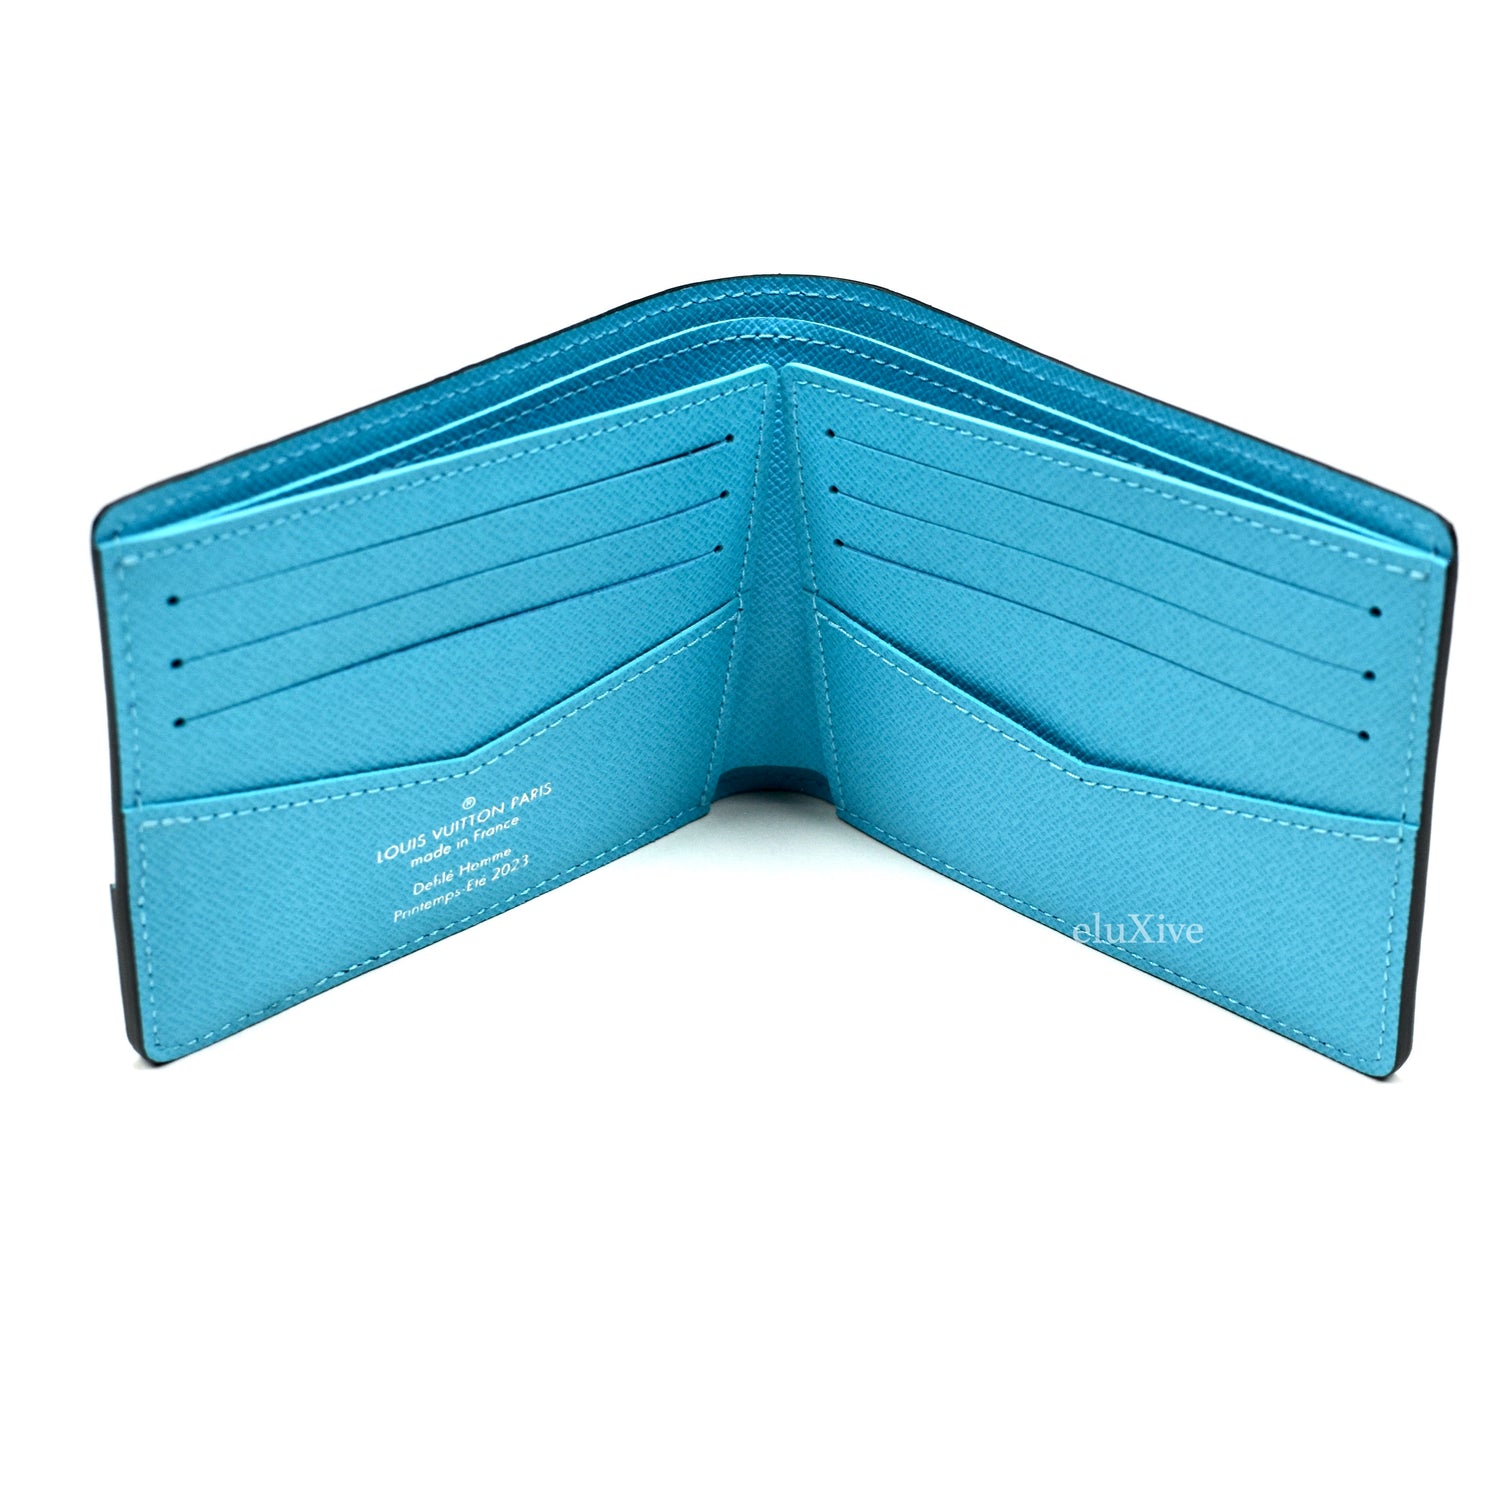 vuitton slender wallet blue